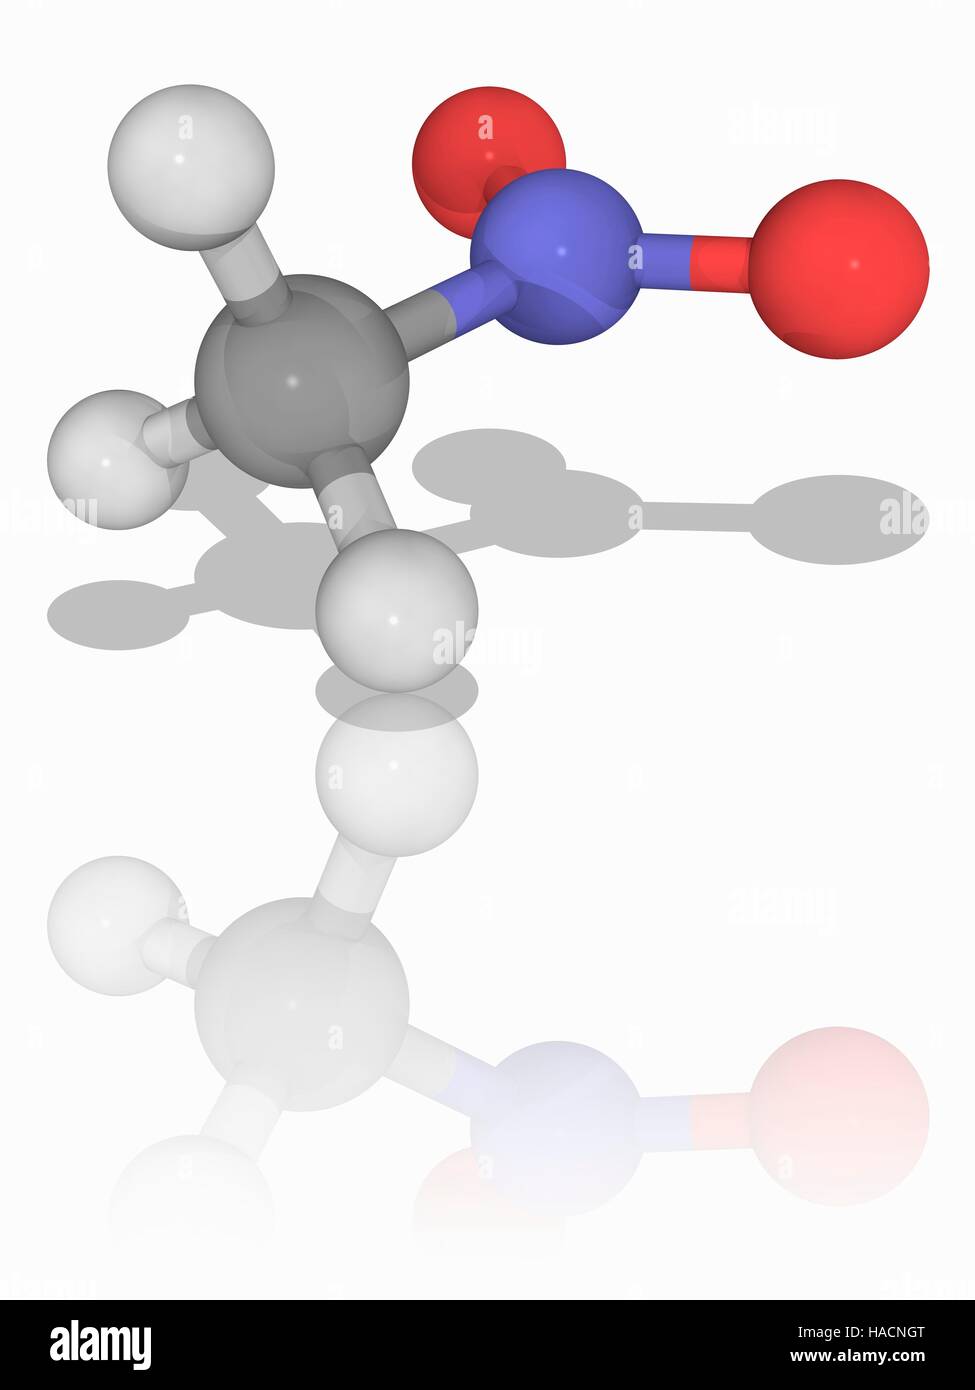 Nitromethan. Molekulares Modell des organischen Verbindung Nitromethan (C.H3. N.O2), hauptsächlich als Stabilisatoren für chlorierte Lösungsmittel verwendet. Atome als Kugeln dargestellt werden und sind farblich gekennzeichnet: Kohlenstoff (grau), Wasserstoff (weiß), Stickstoff (blau) und Sauerstoff (rot). Abbildung. Stockfoto